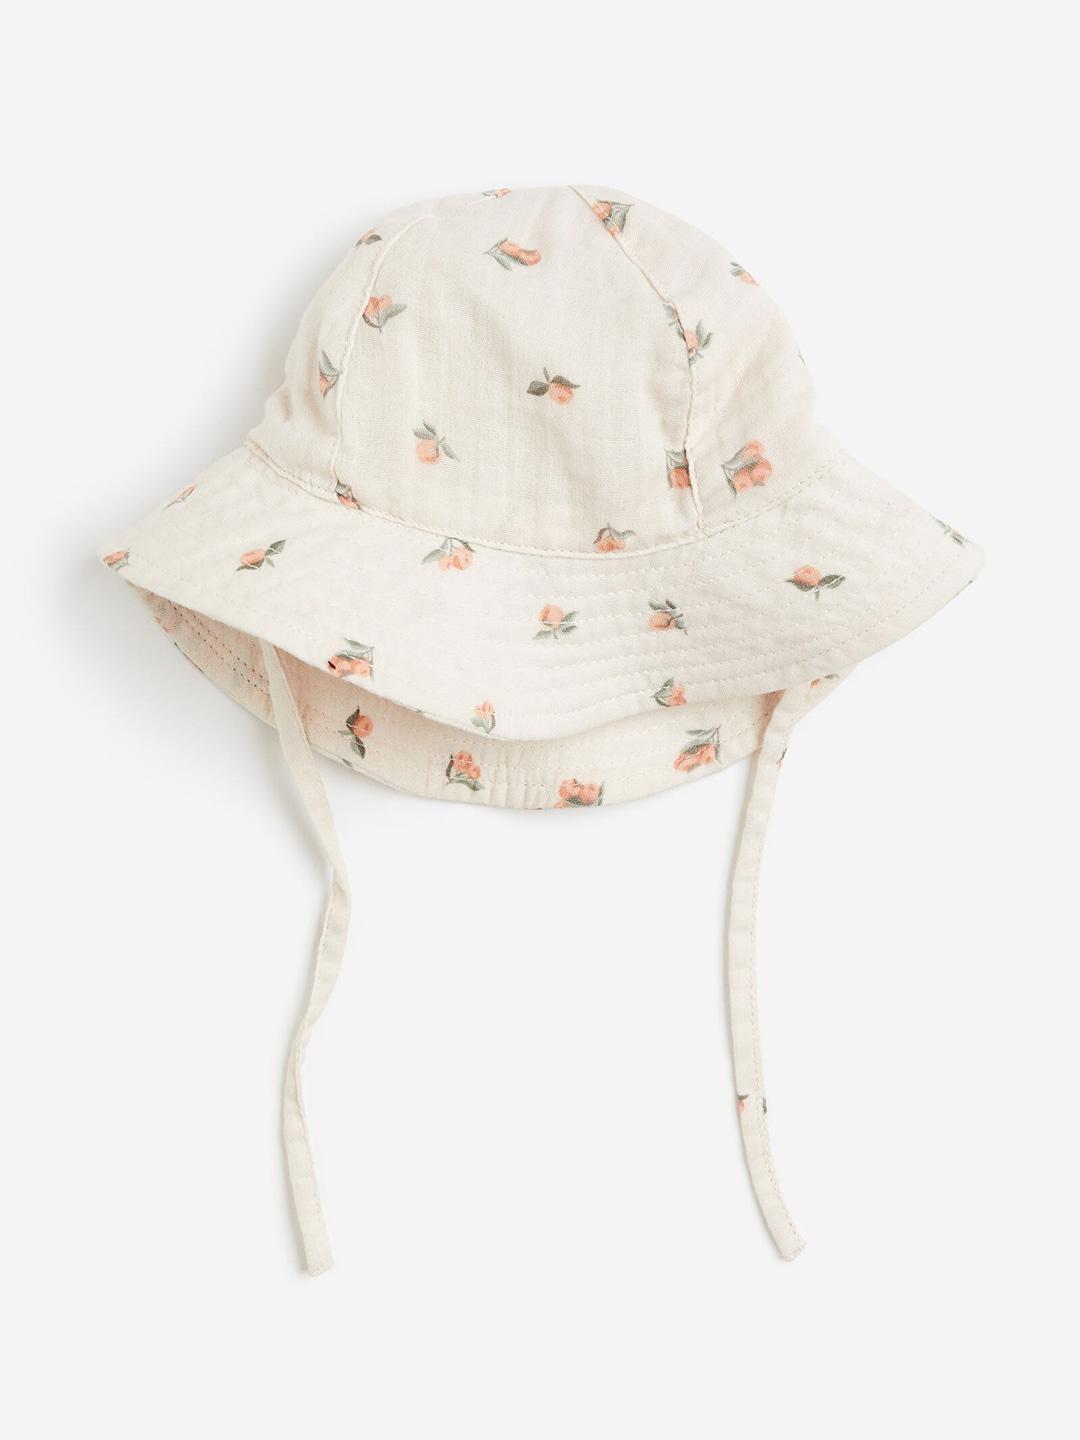 h&m-infant-boys-pure-cotton-sun-hat